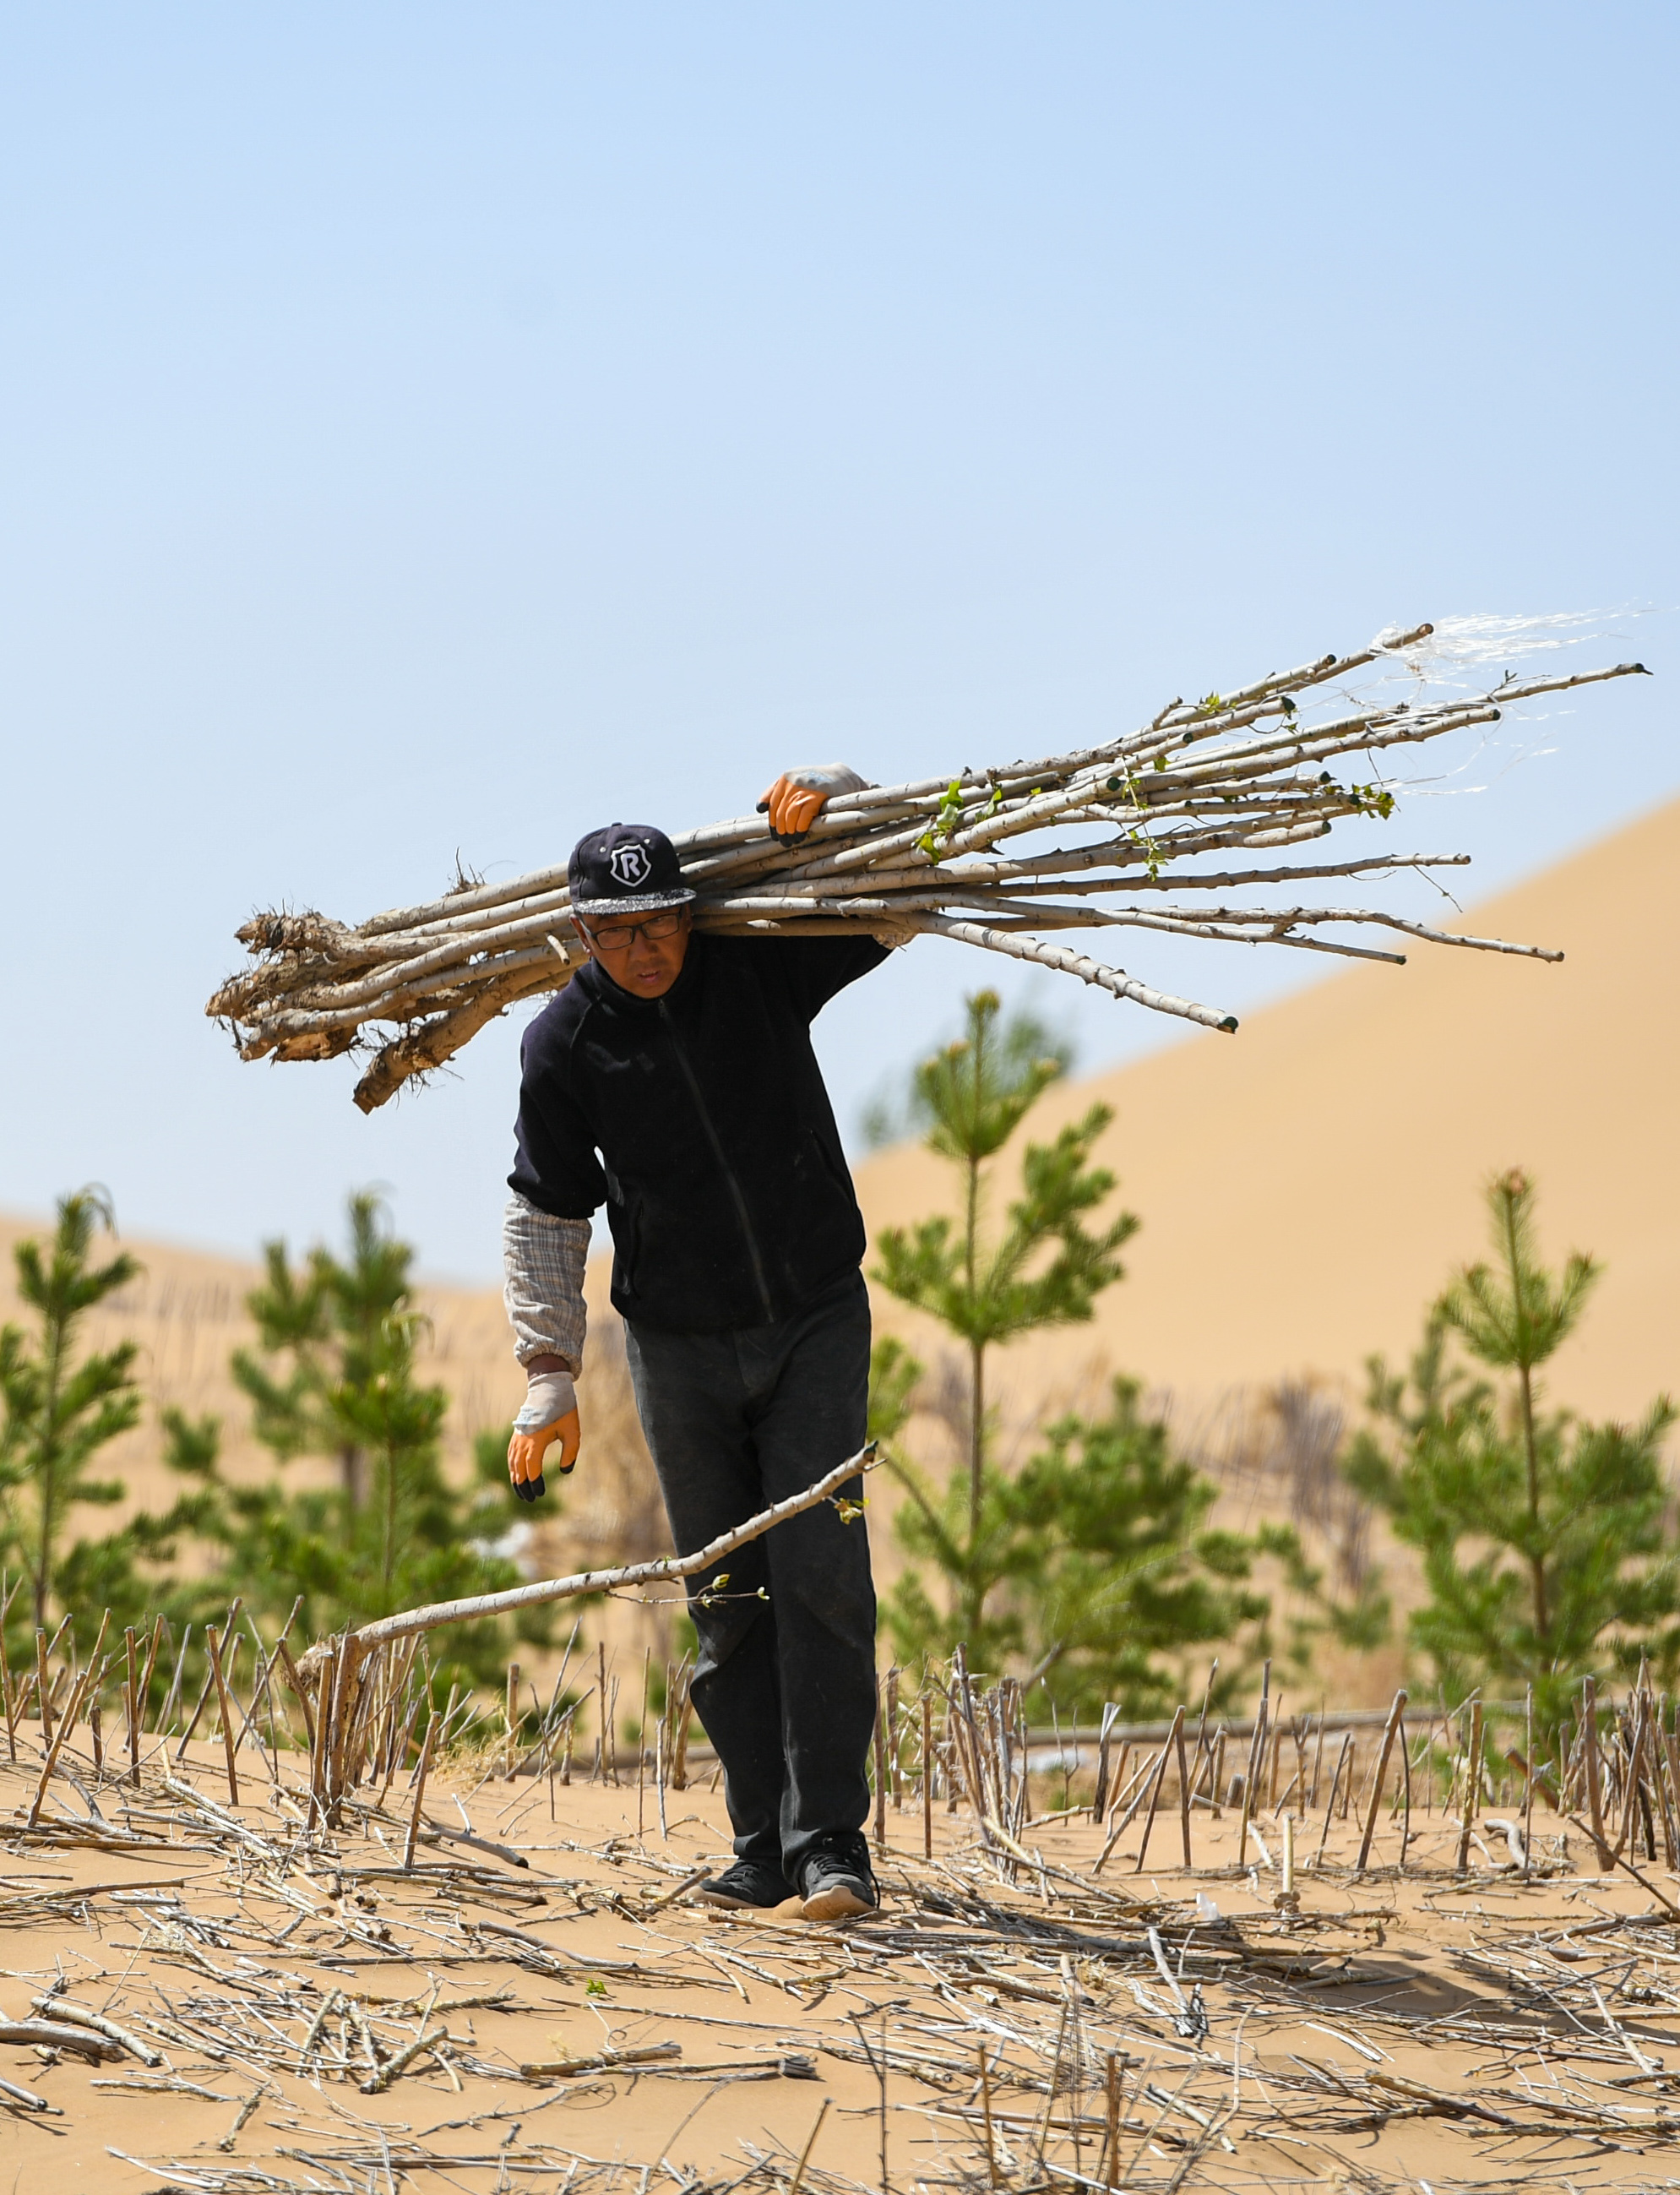 新华社照片,鄂尔多斯(内蒙古),2019年4月26日    库布其沙漠植树忙